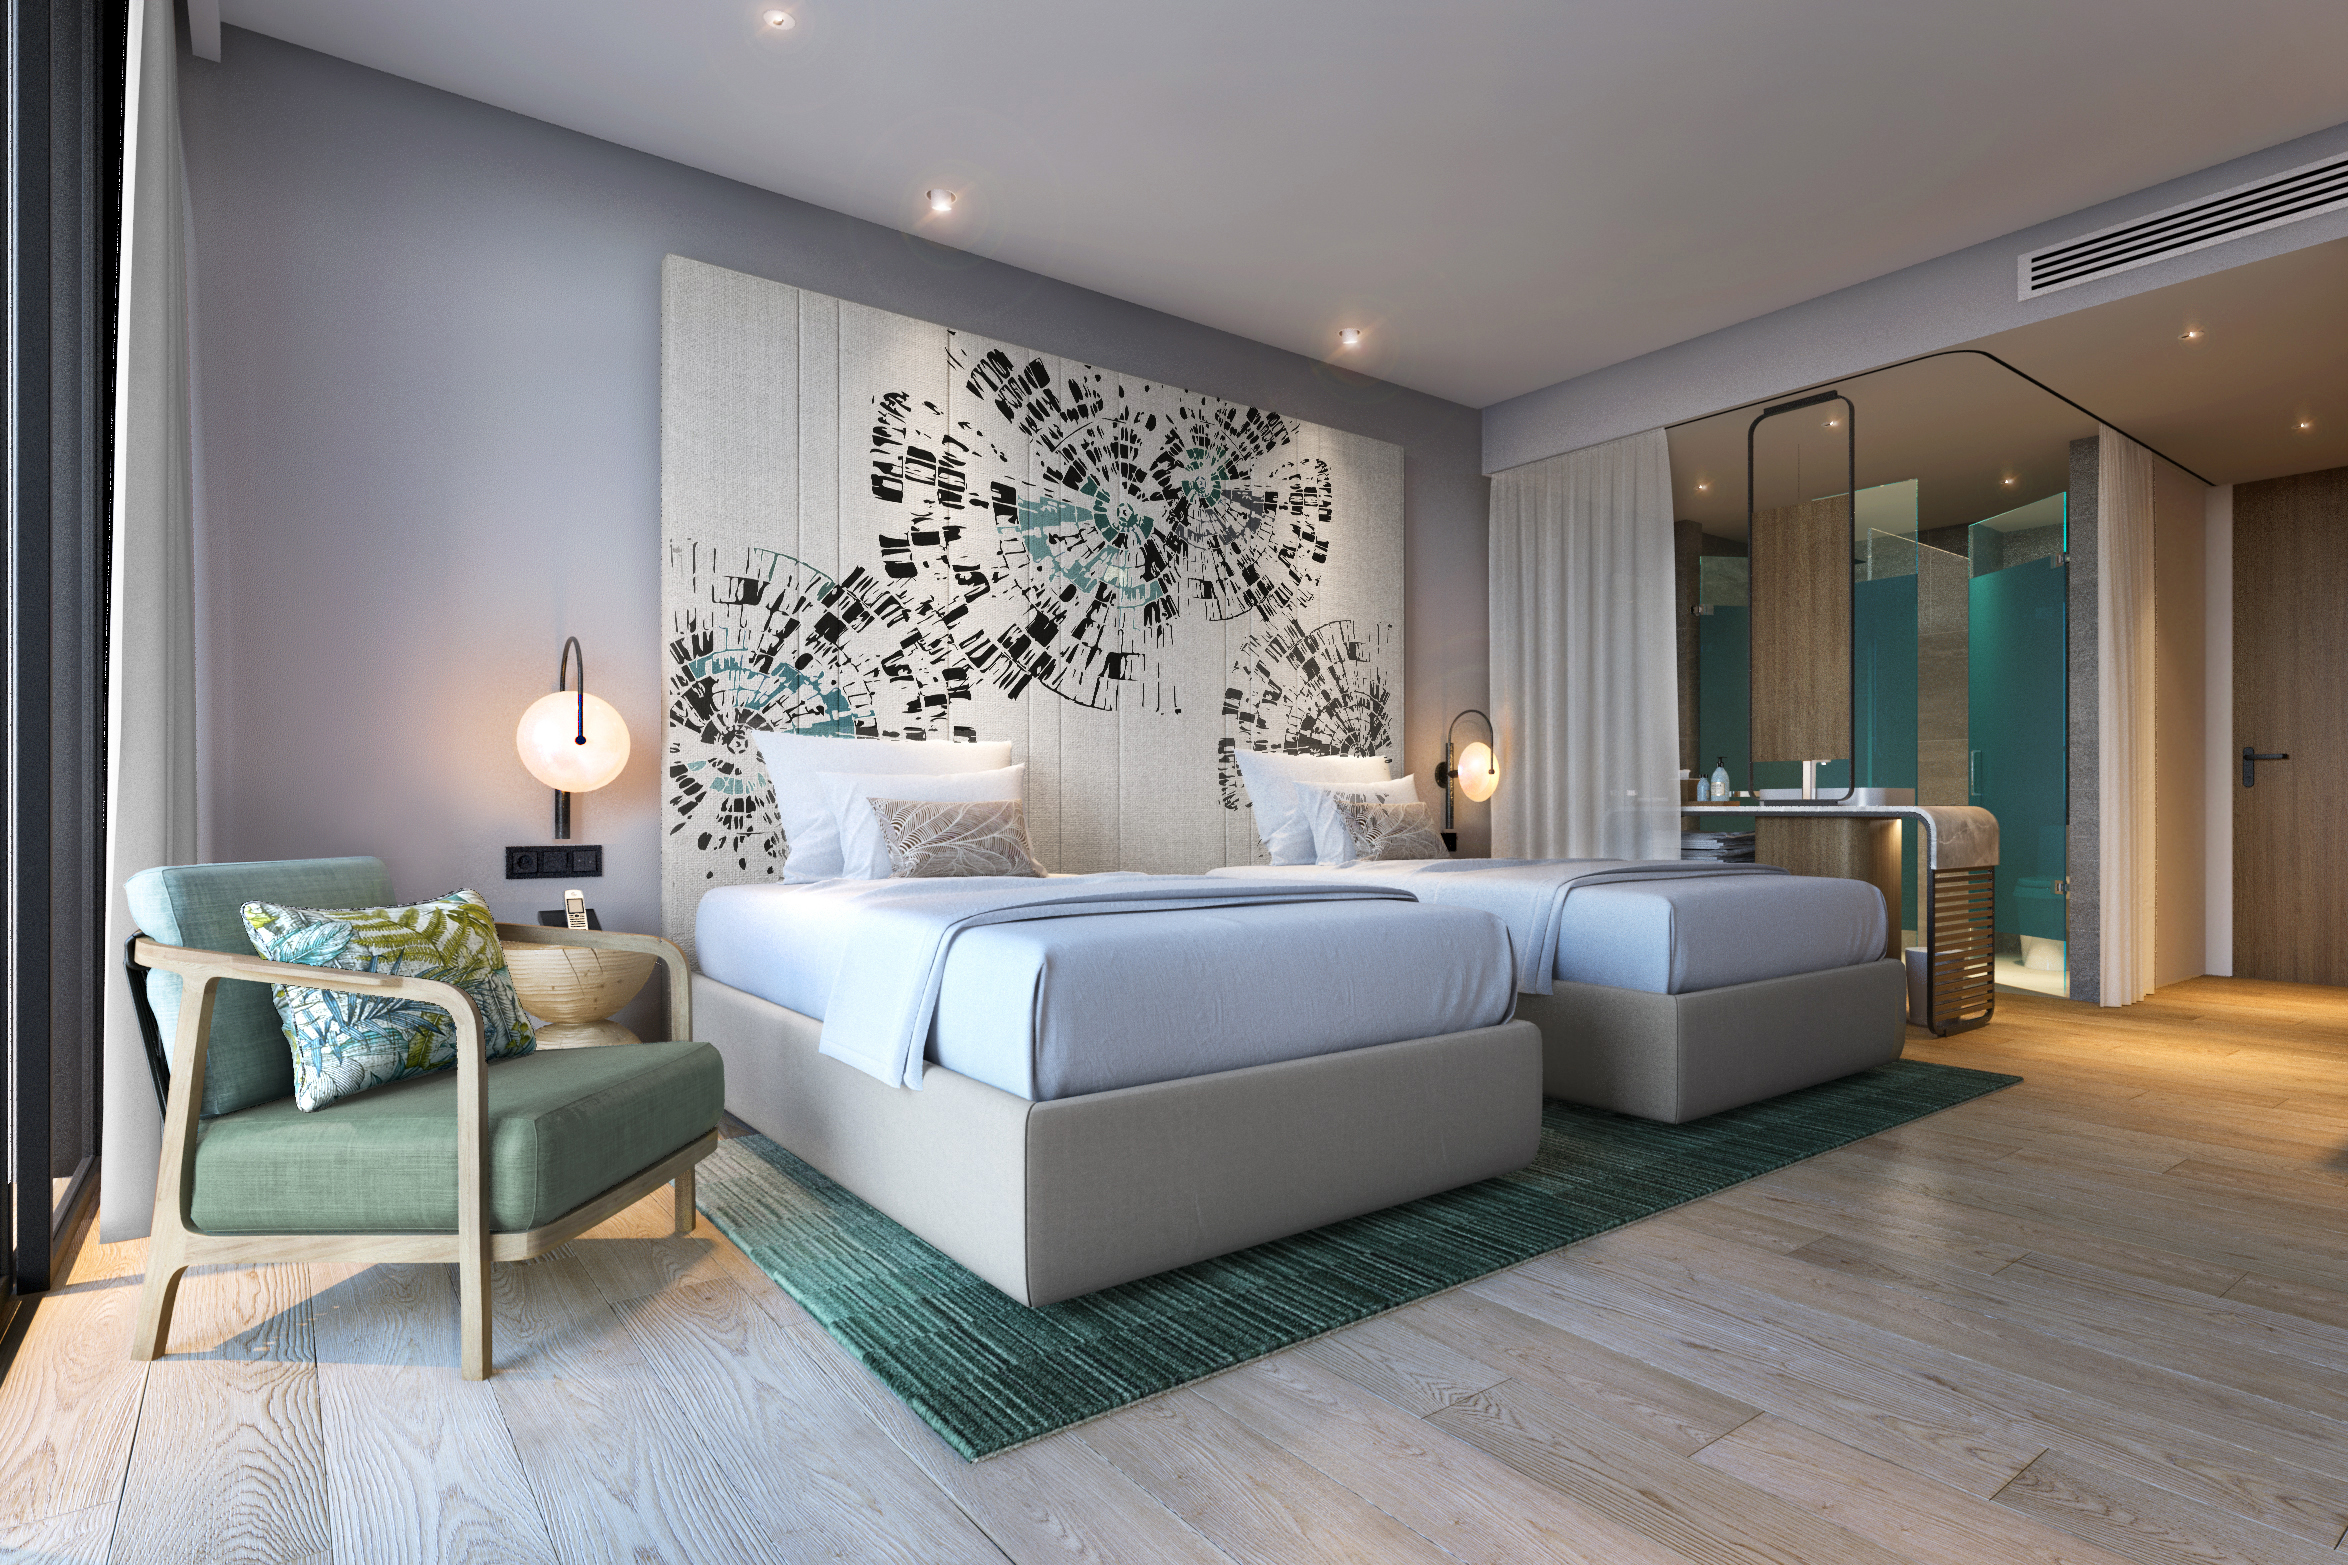 Anya Premier - Khách sạn chuẩn 5 sao đầu tiên tại Quy Nhơn - Fantasea Travel